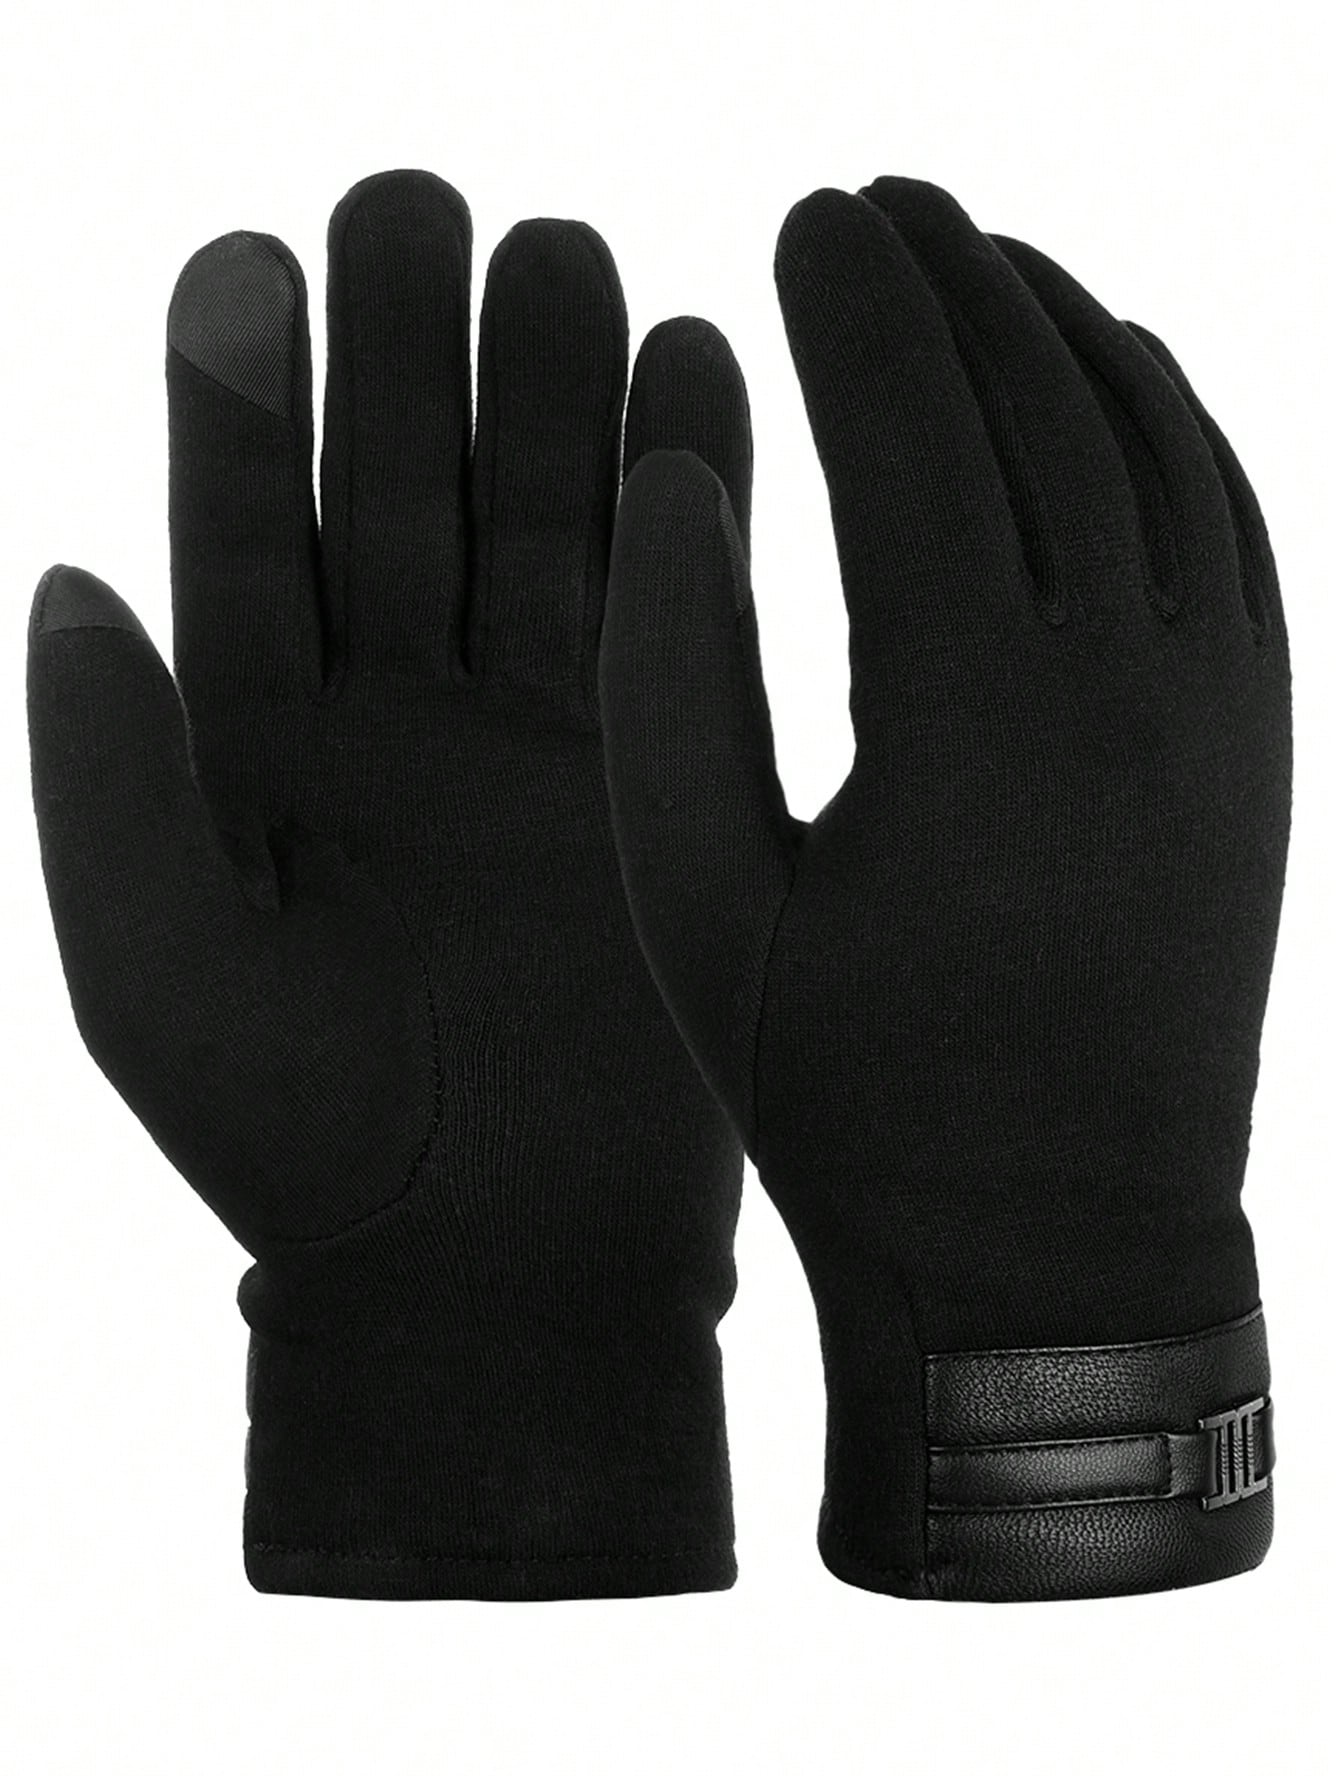 ATARNI Зимние теплые перчатки Перчатки для сенсорного экрана Повседневные перчатки для мужчин, черный